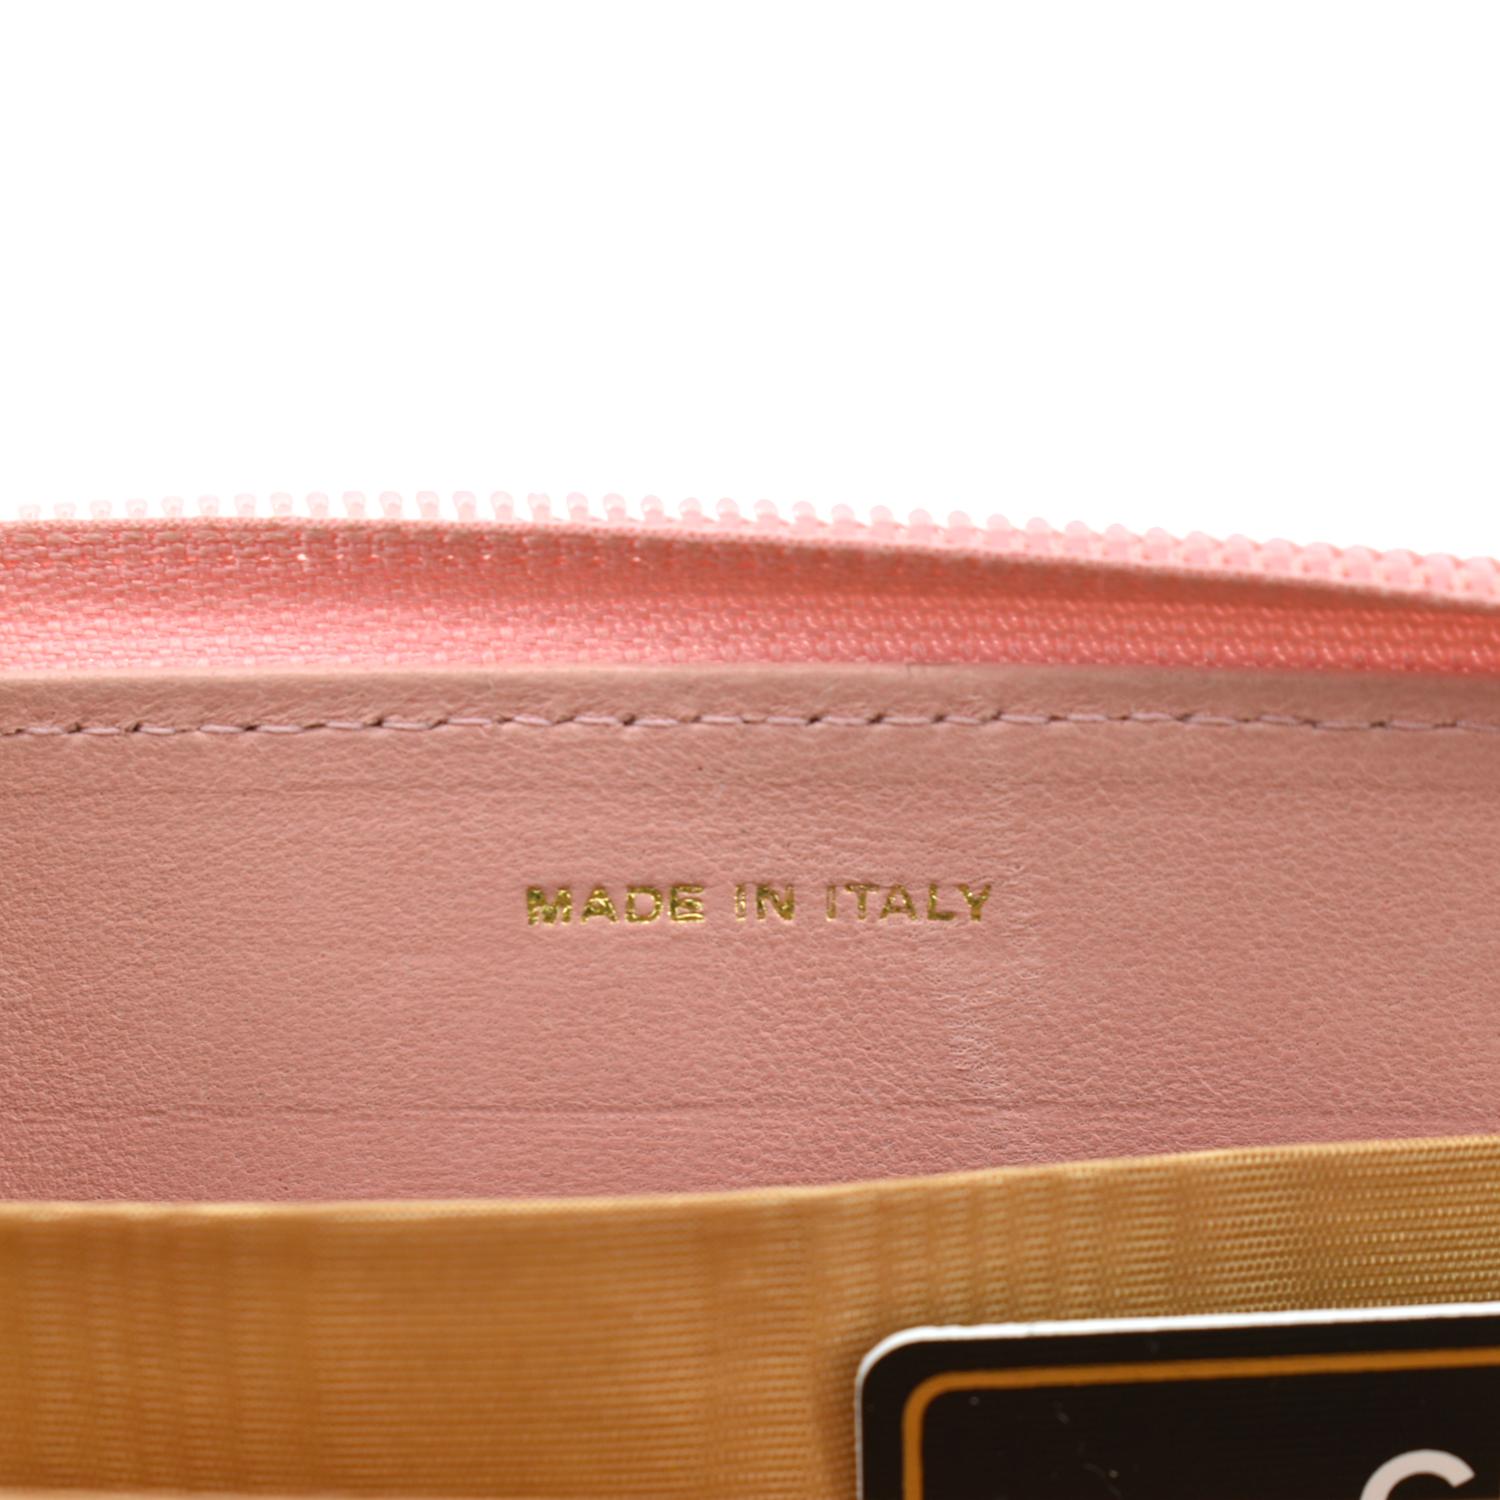 CHANEL purse A50097 Classic long zip wallet Matt caviar skin pink